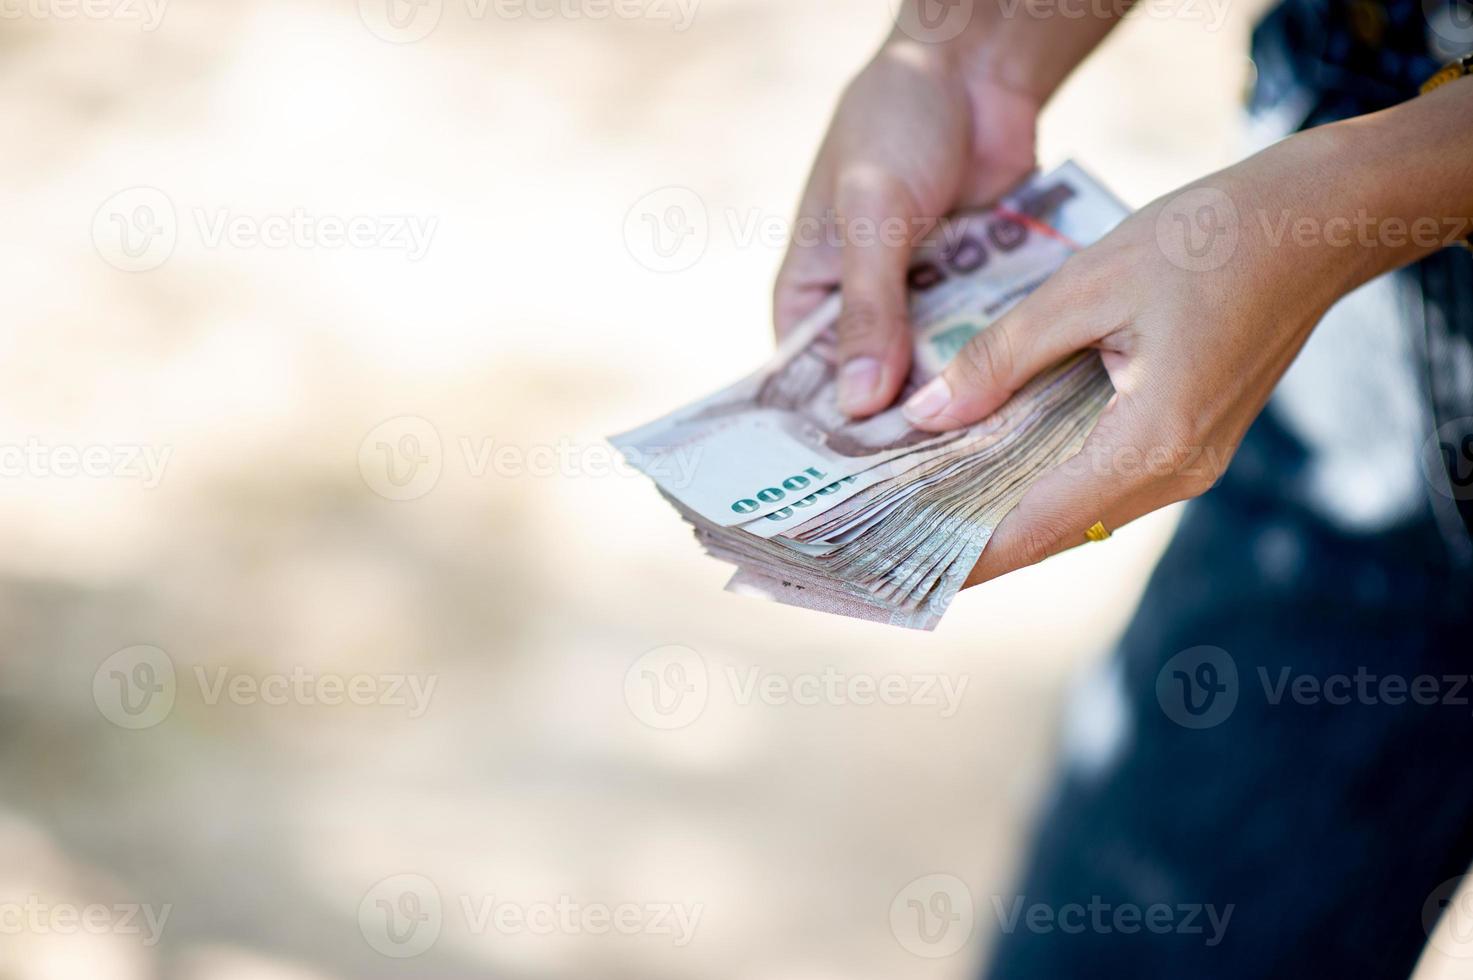 fotos de close-up e cartões bancários usados para compras comerciais e de câmbio. conceito de mão e dinheiro